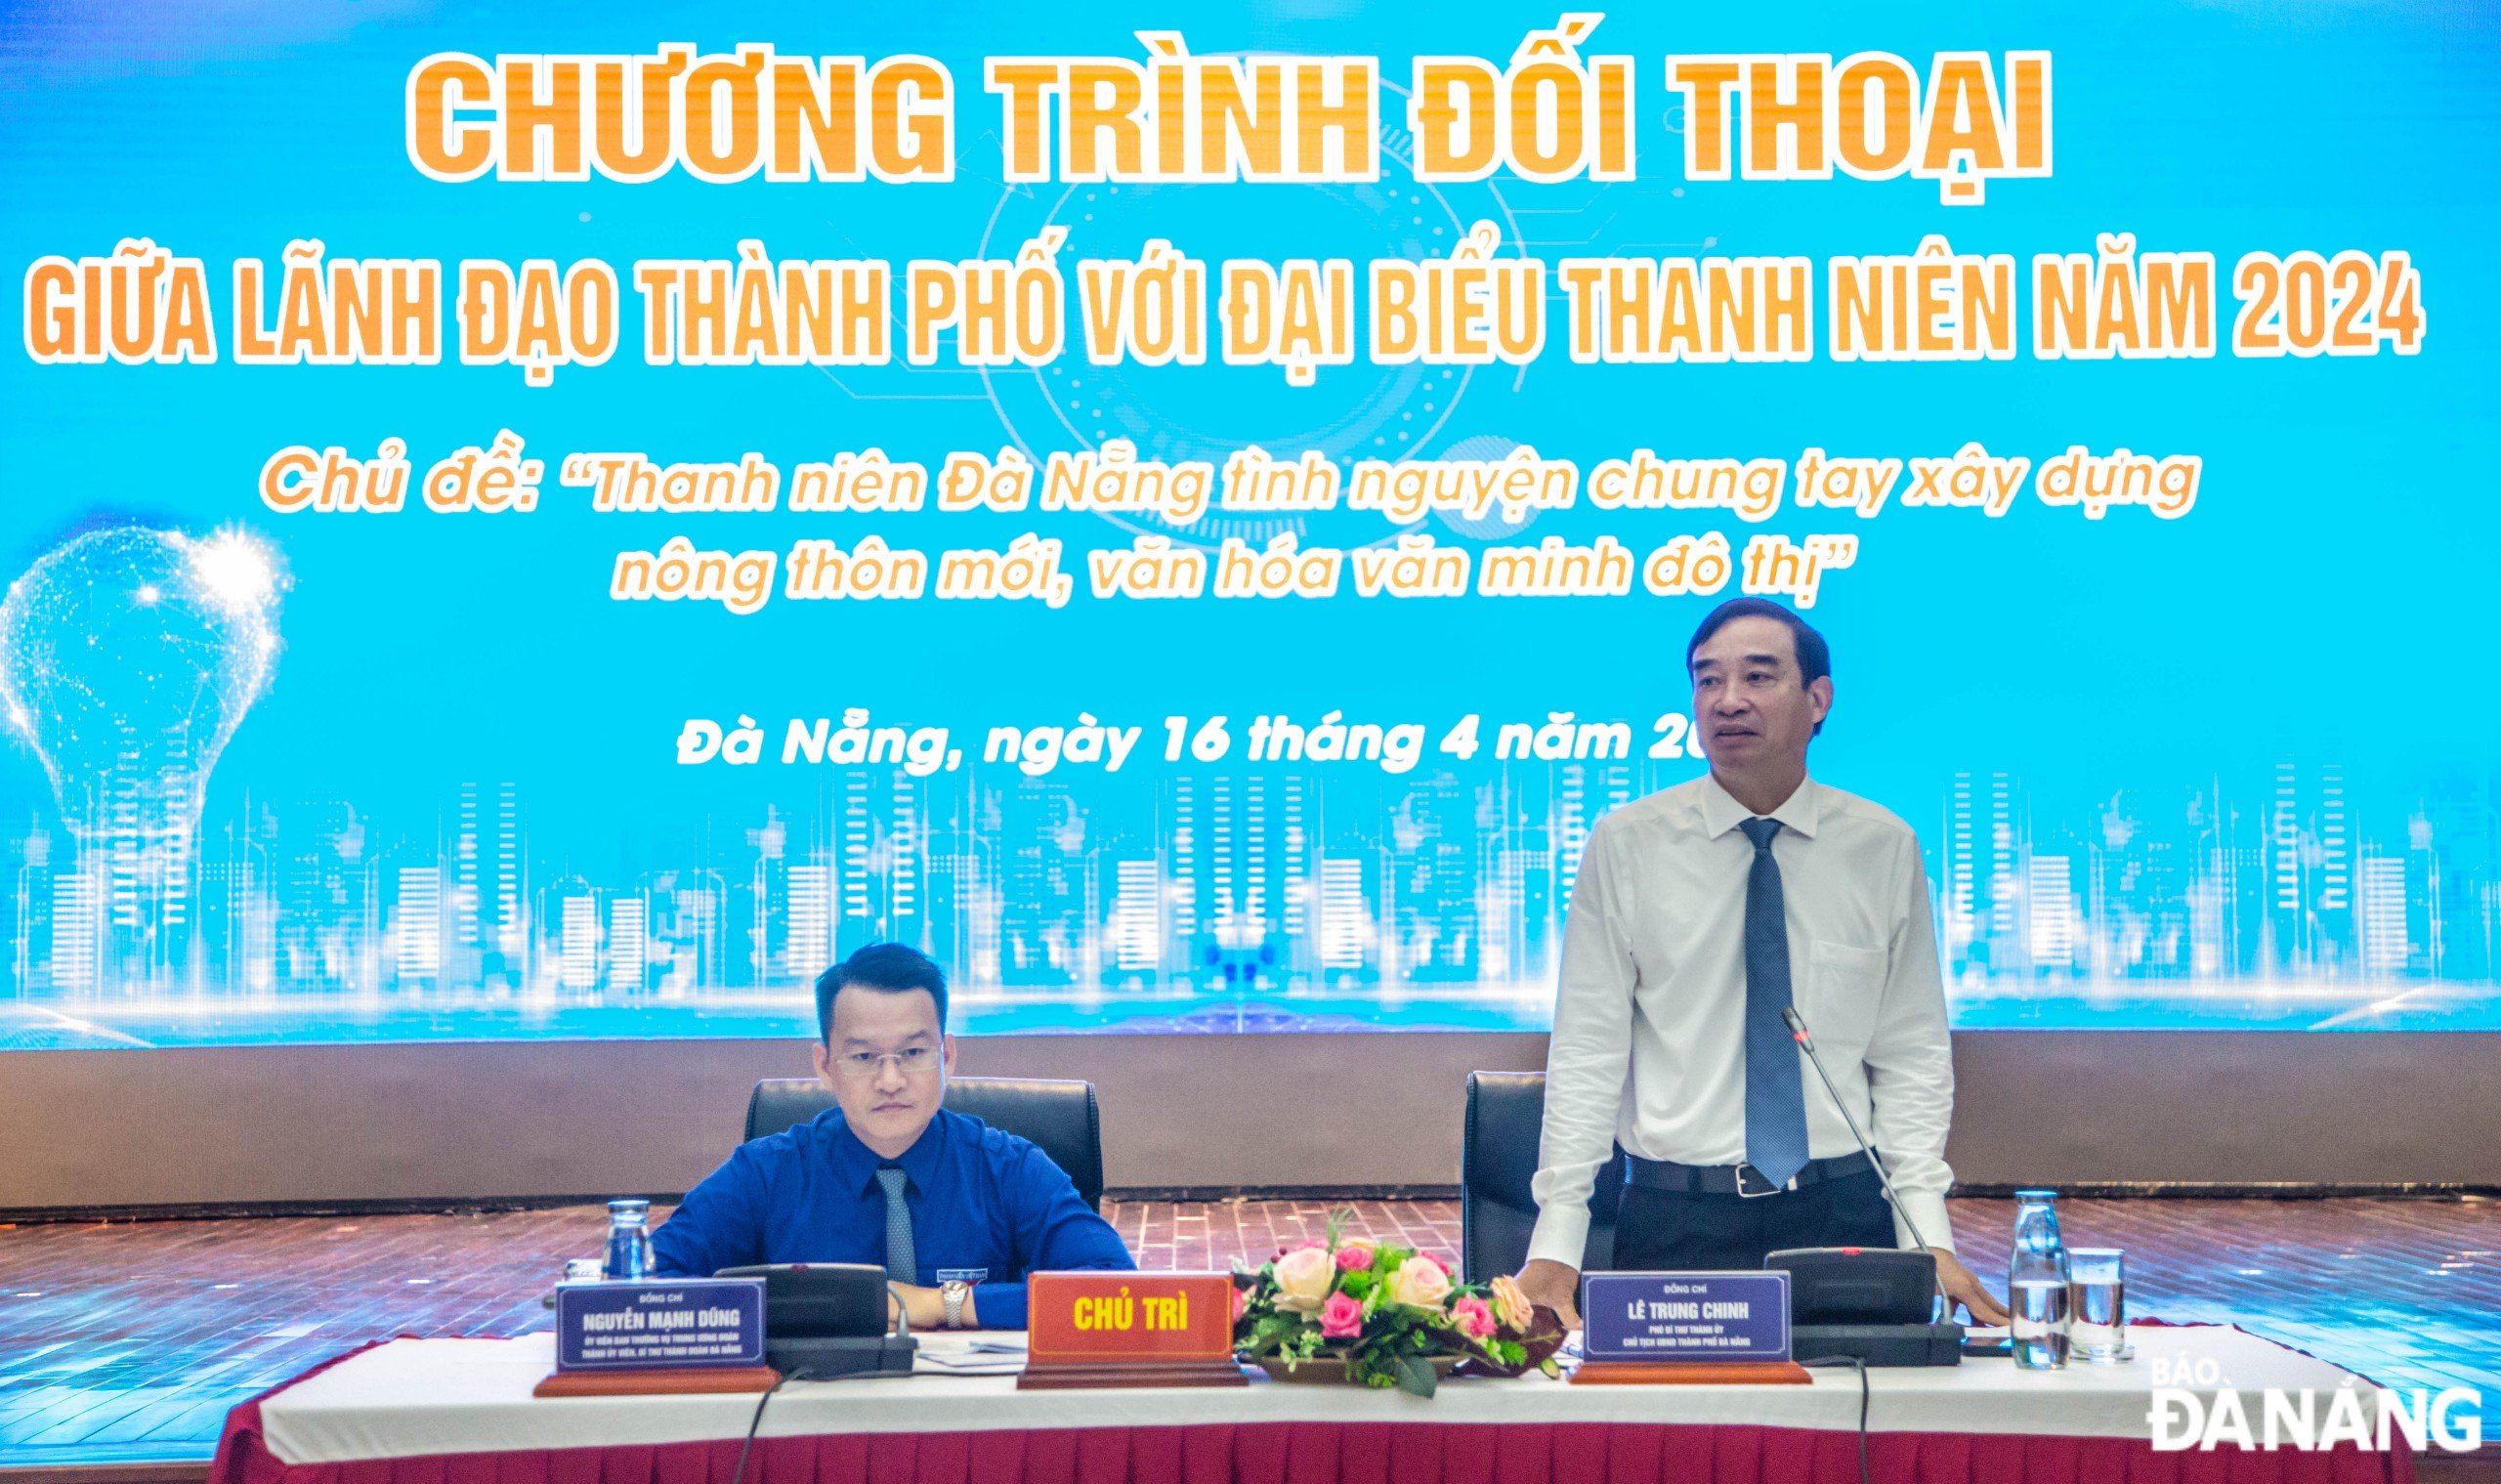 Chủ tịch UBND thành phố Lê Trung Chinh (bên phải) và Bí thư Thành đoàn Nguyễn Mạnh Dũng (bên trái) đồng chủ trì buổi đối thoại